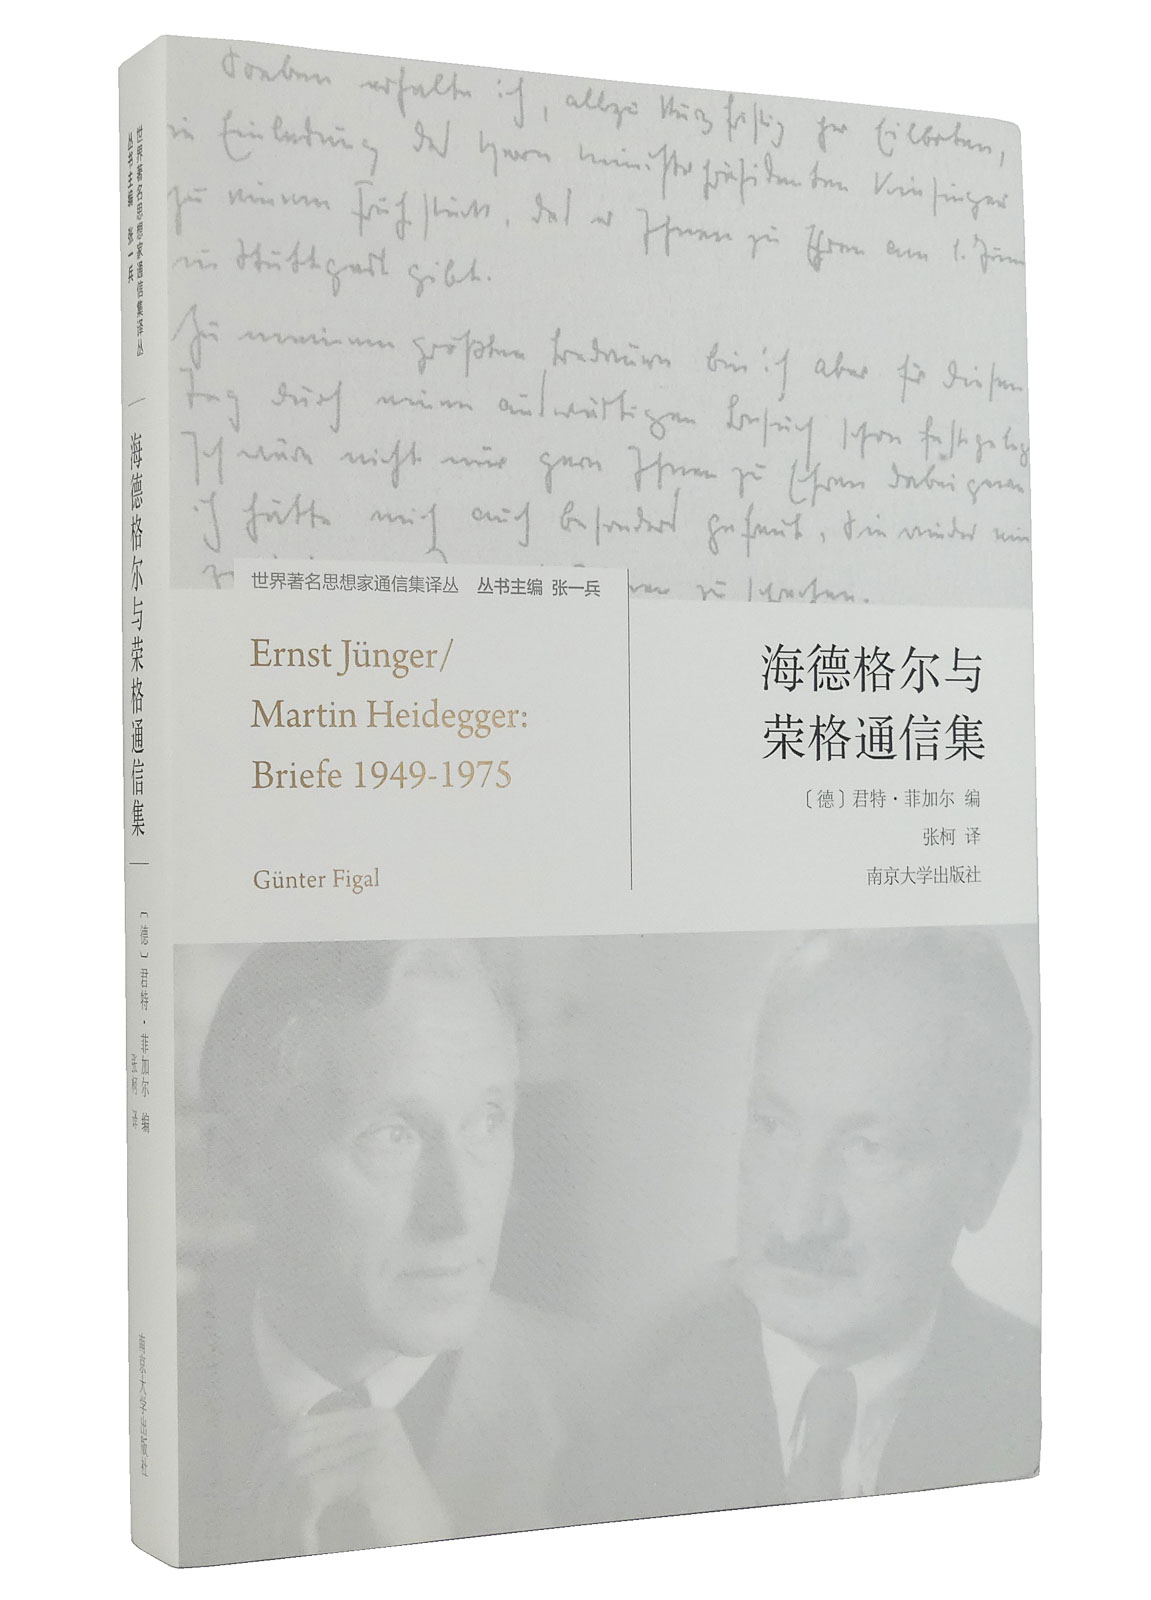 Ernst Jünger / Martin Heidegger: Briefe 1949-1975 / Hai de ge er yu Rong ge tong xin ji - Jünger, Ernst; Heidegger, Martin; Figal, Günter [Hg.]